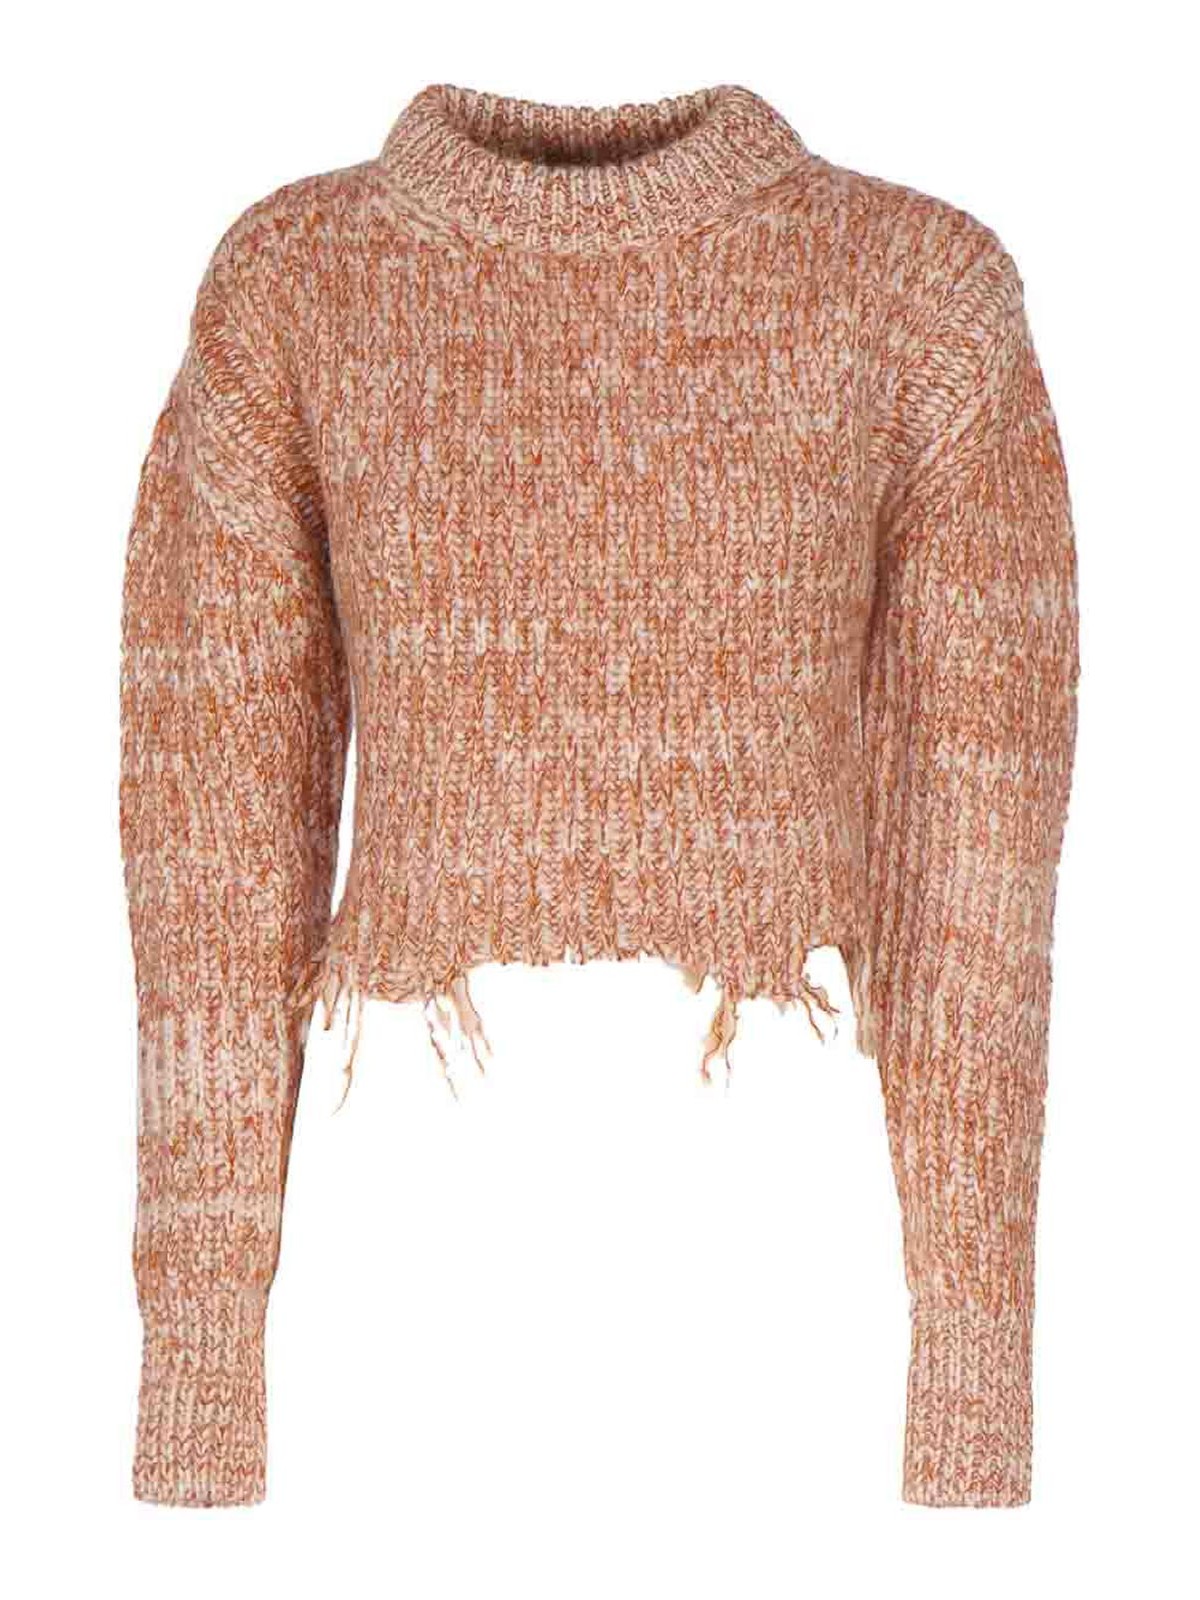 Stella Mccartney Distressed Effect Sweater In Beige